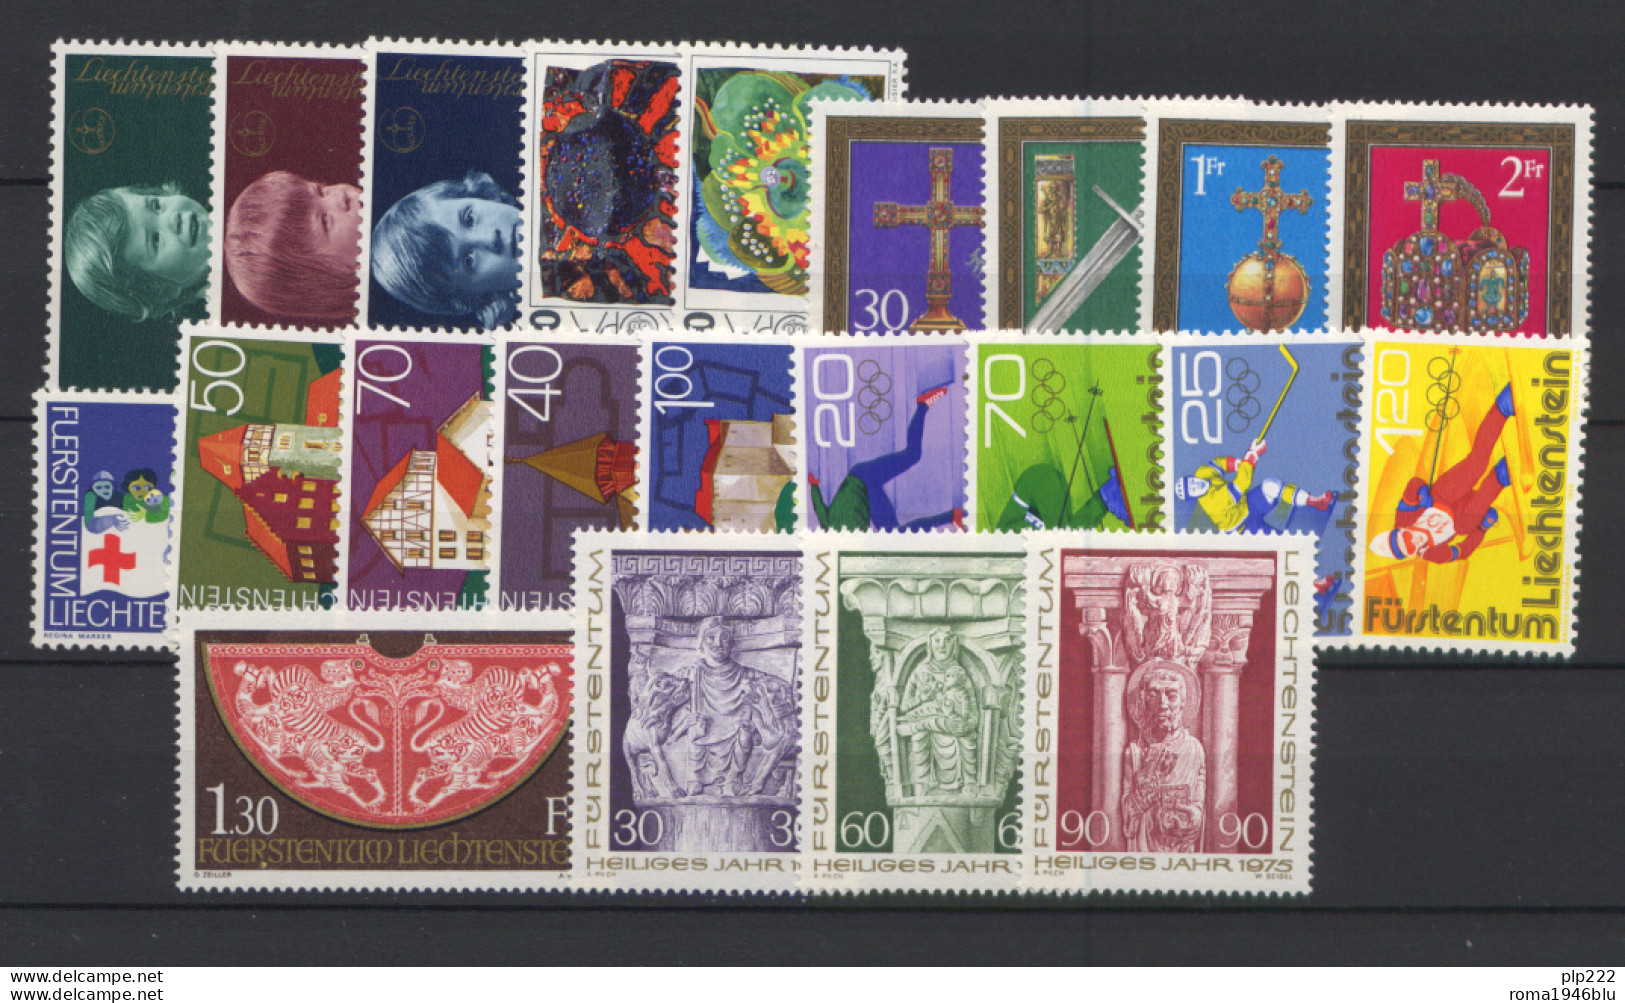 Liechtenstein 1975 Annata Completa / Complete Year Set **/MNH VF - Años Completos